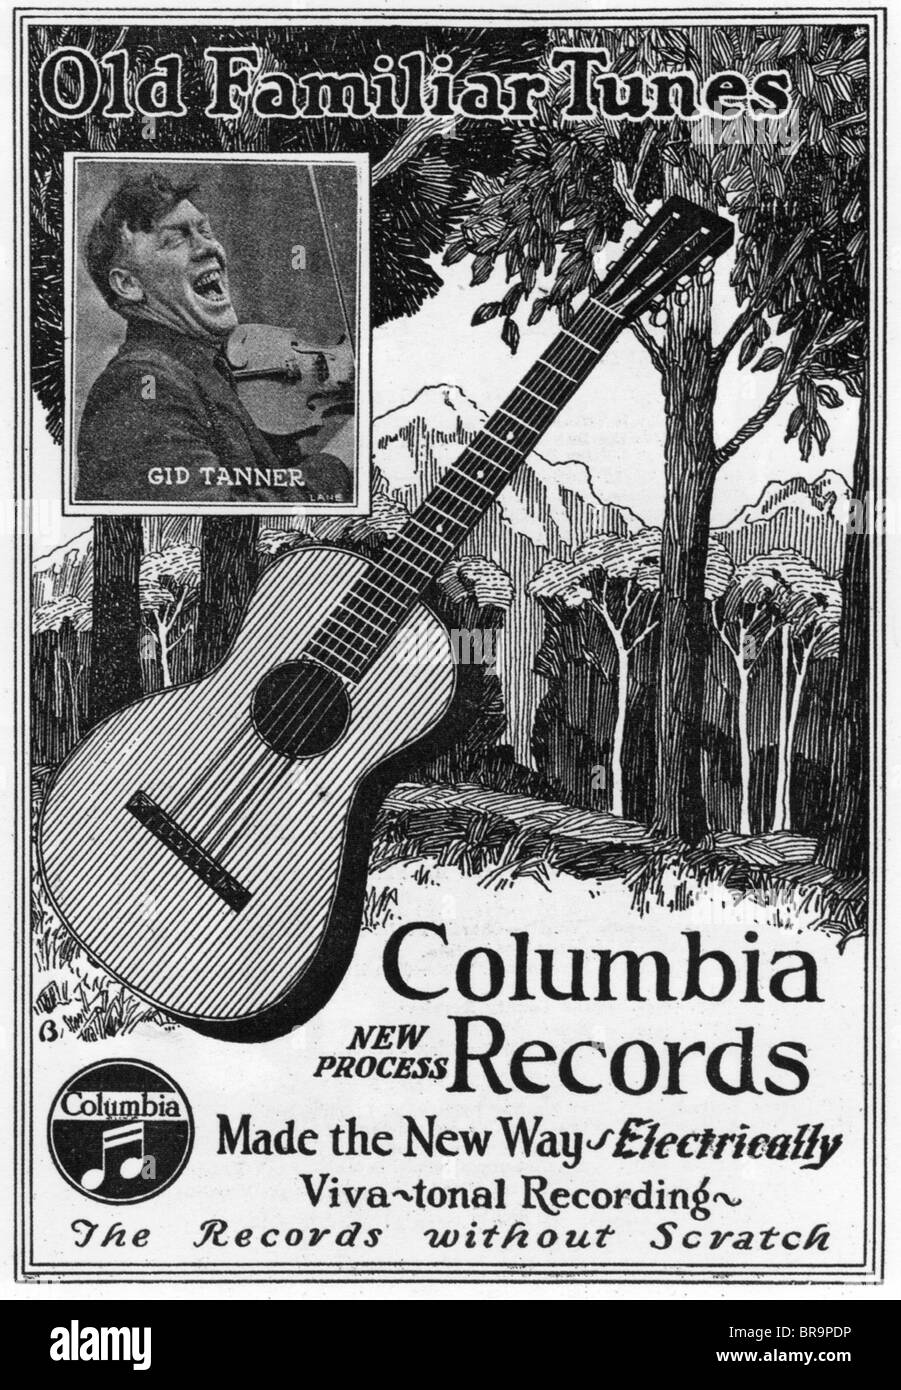 COUNTRY und WESTERN Musik "Alte vertraute Melodien" war der Name auf diese 1927-Anzeige verwendet, um zu beschreiben was C & W wurde. Stockfoto